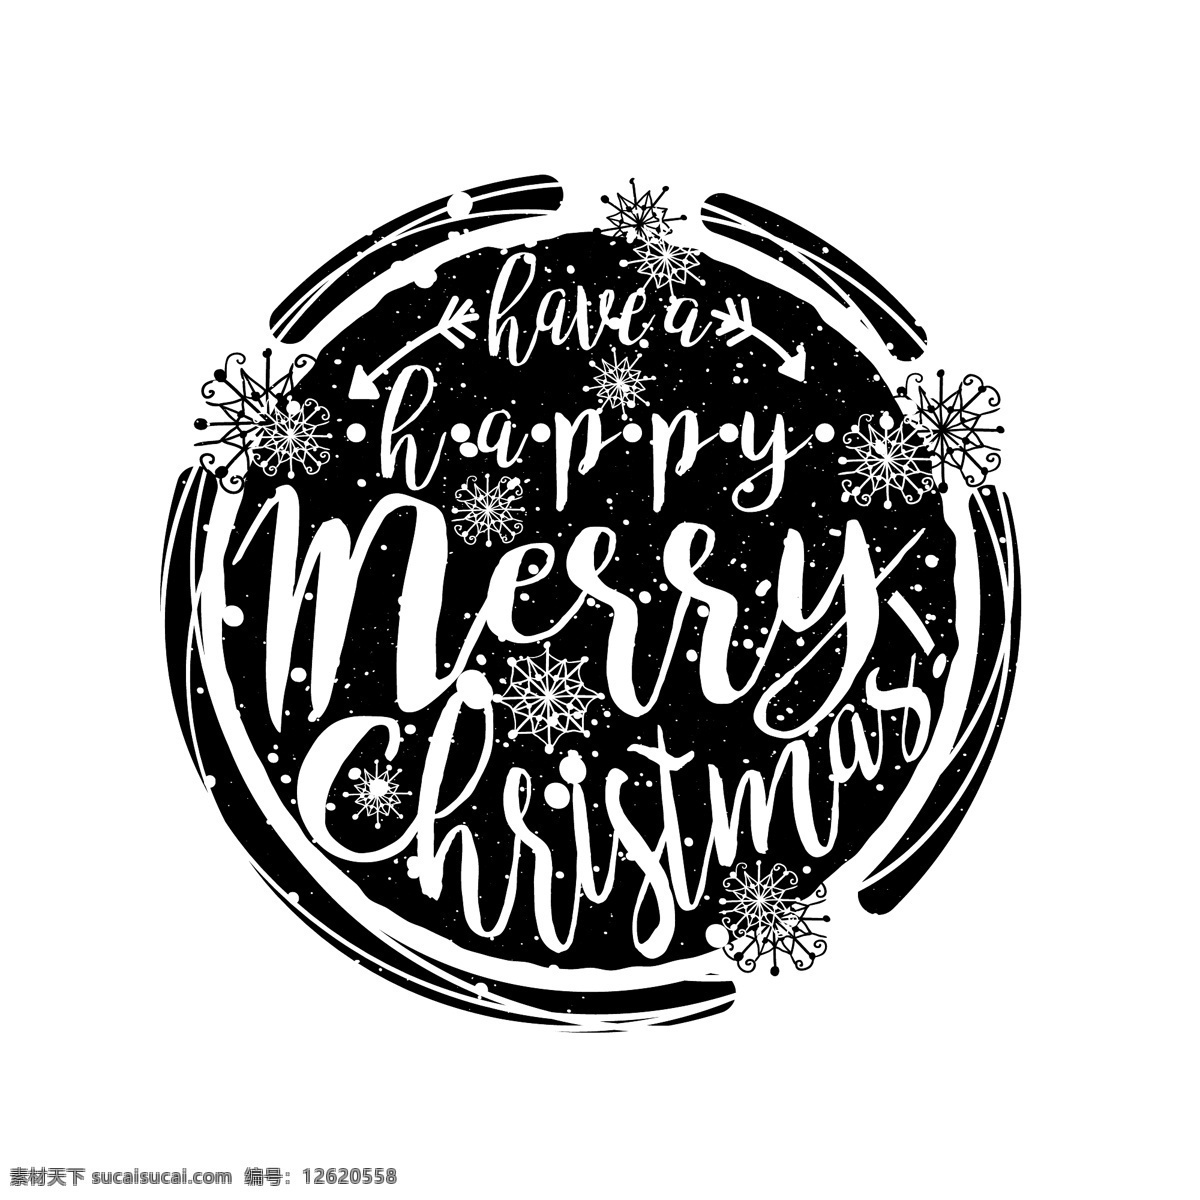 黑白 冬季 印刷 海报 卡片 插图 背景 矢量 抽象 黑色 轮廓 类型 手绘 雪花 圣诞节 圆形